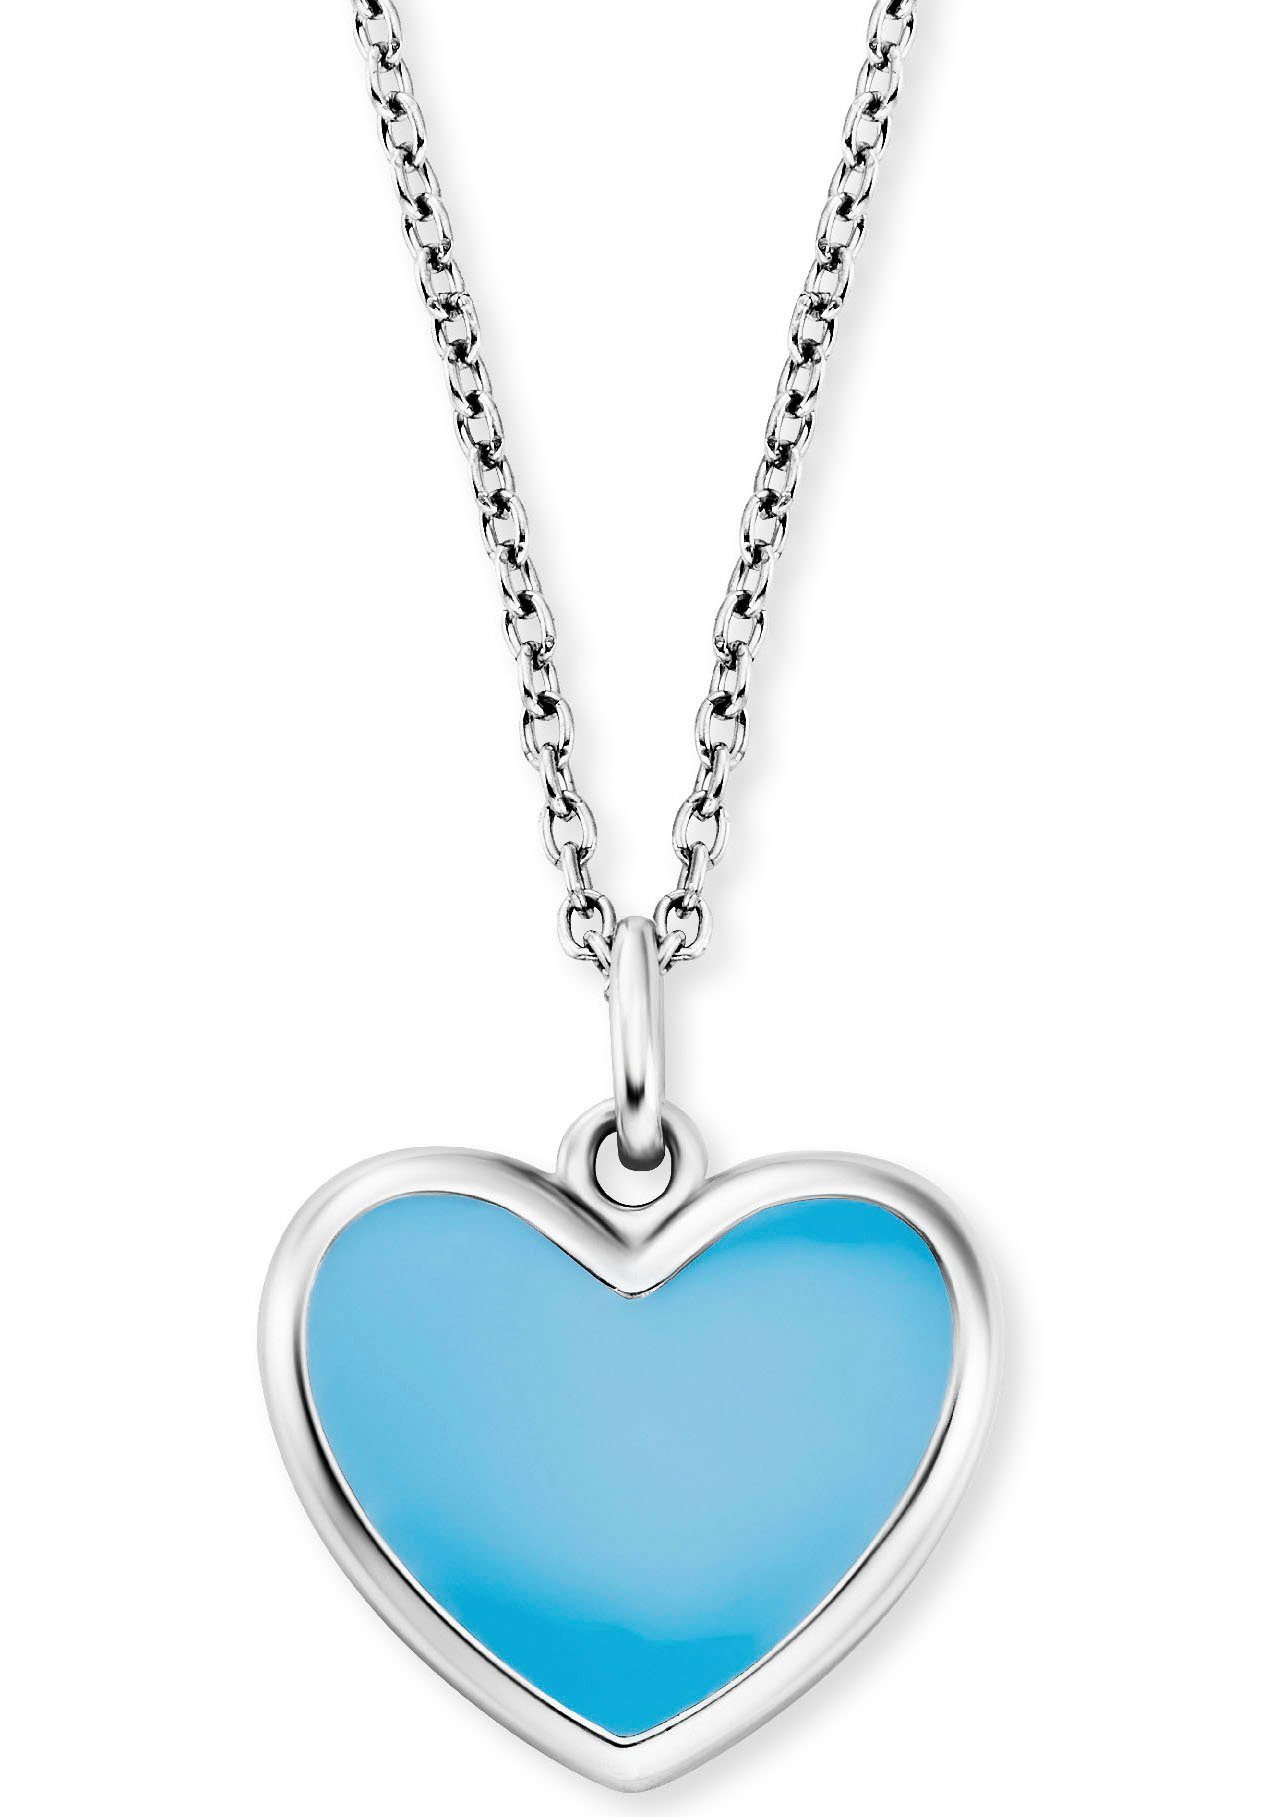 Herzengel Kette mit Anhänger Schmuck Geschenk, Little Heart, Herz, HEN-HEART-06, HEN-HEART-13 silberfarben-blau